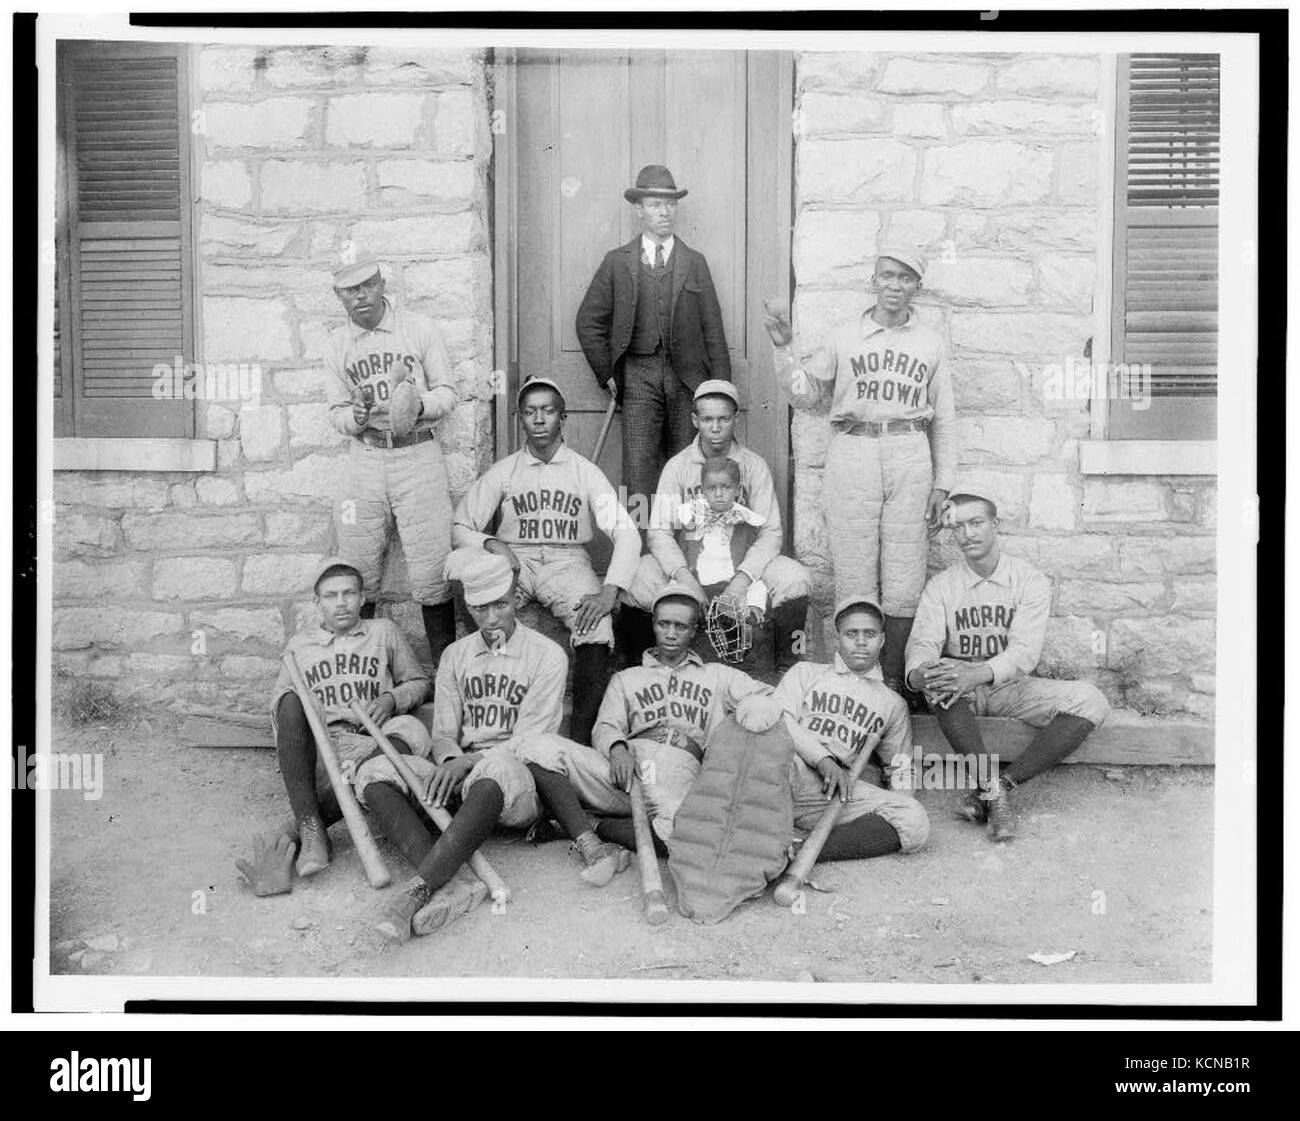 African American Baseball spieler von Morris Brown College, mit Jungen und einem anderen Mann stand in der Tür, Atlanta, Georgia LCCN 95507100 Stockfoto